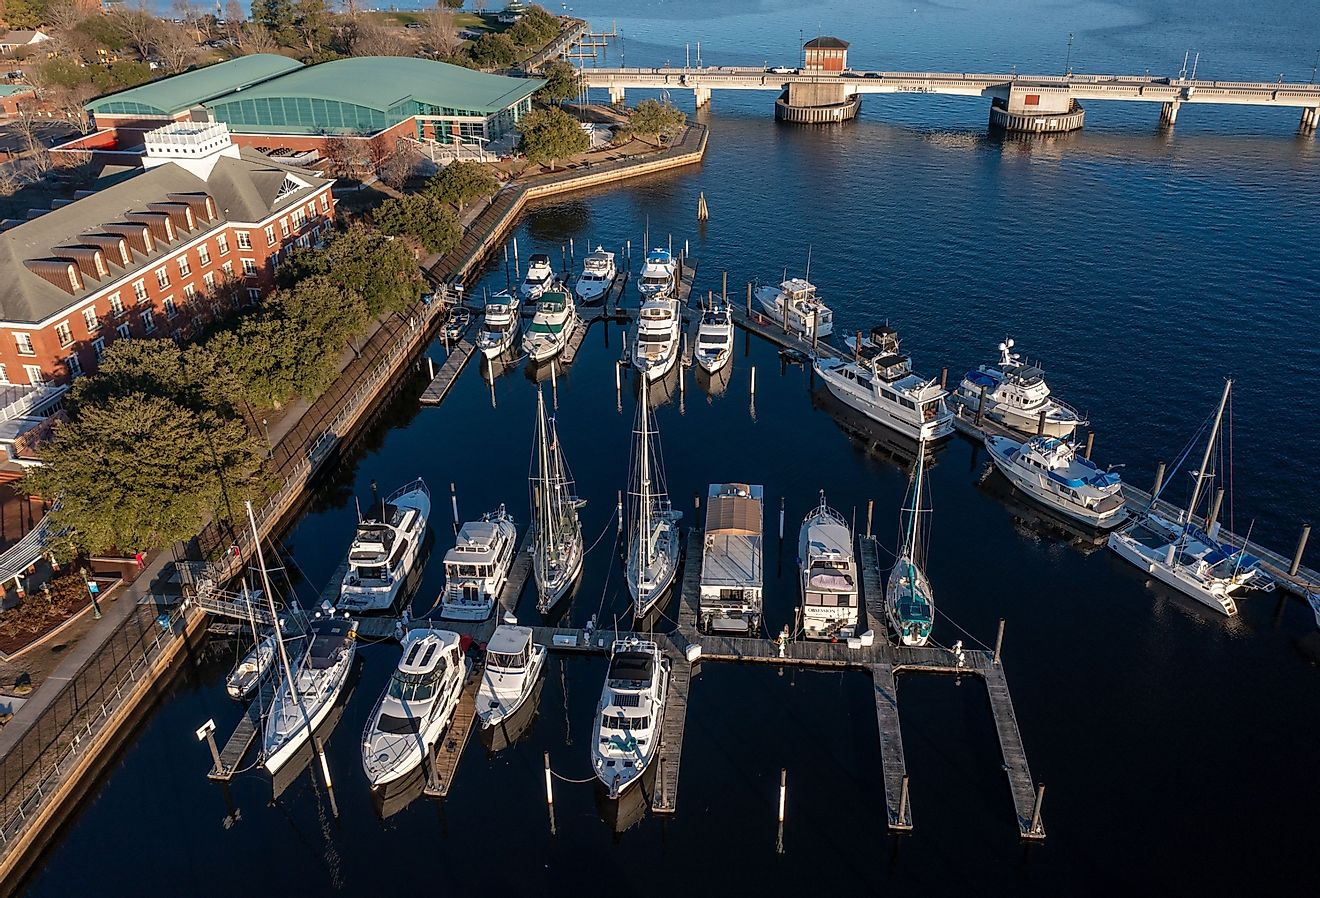 Aerial view of yachts docked at a marina near downtown New Bern, North Carolina.